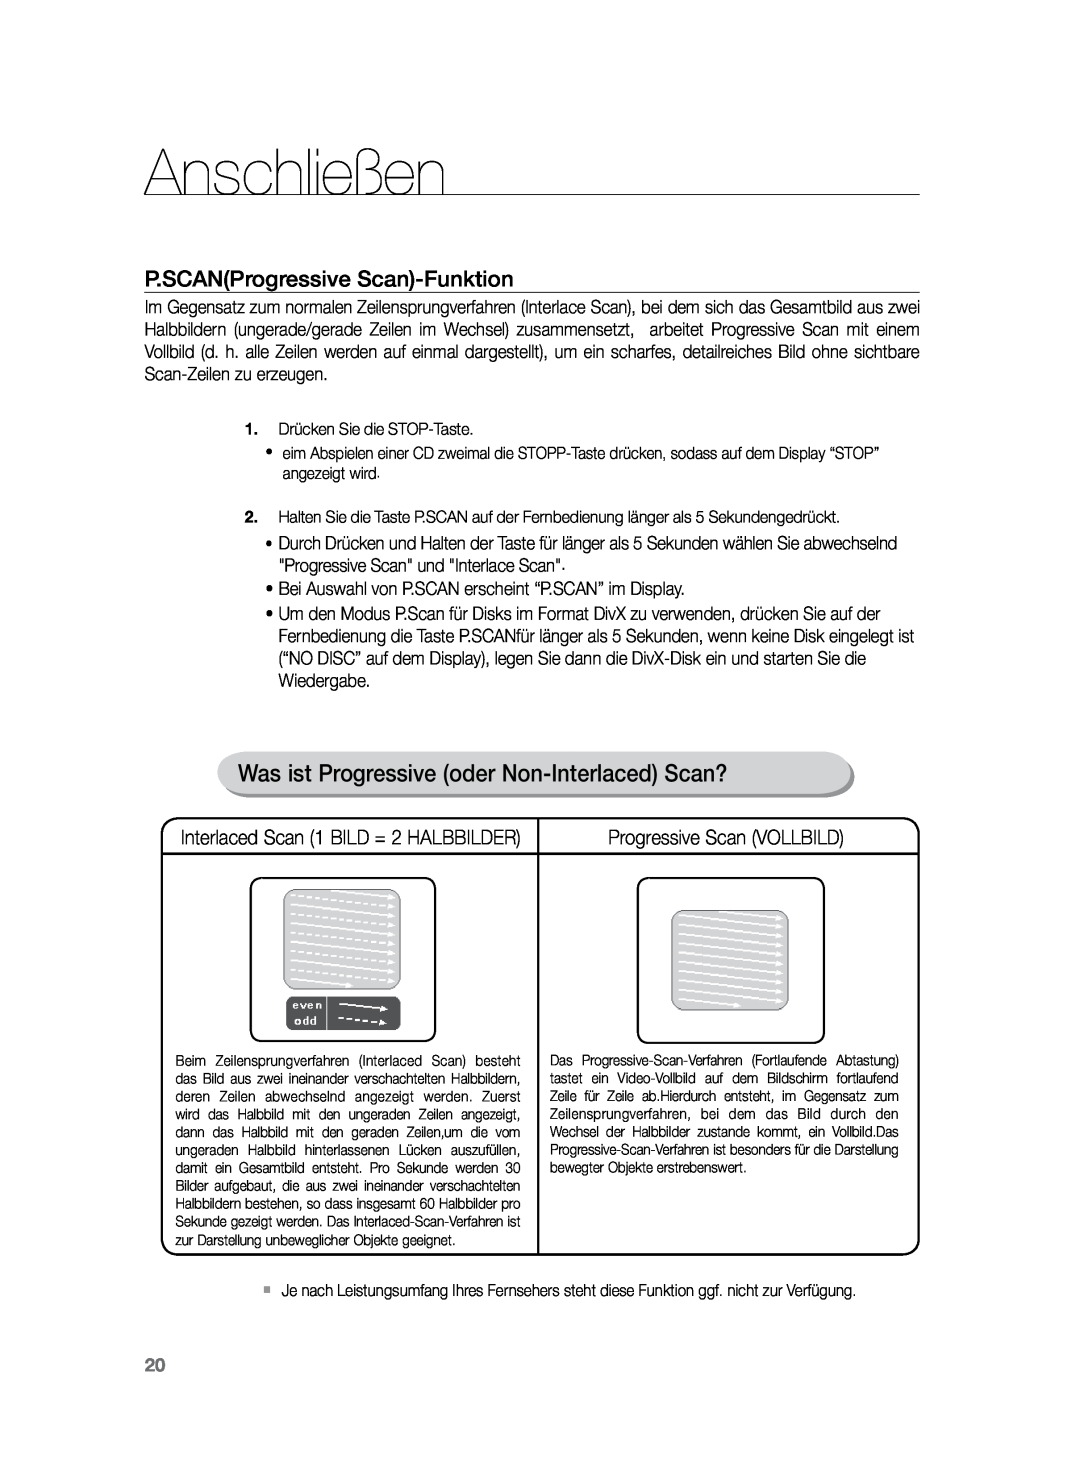 Samsung HT-Z120T/EDC manual Was ist Progressive oder Non-Interlaced Scan?, P.SCANProgressive Scan-Funktion, Anschließen 